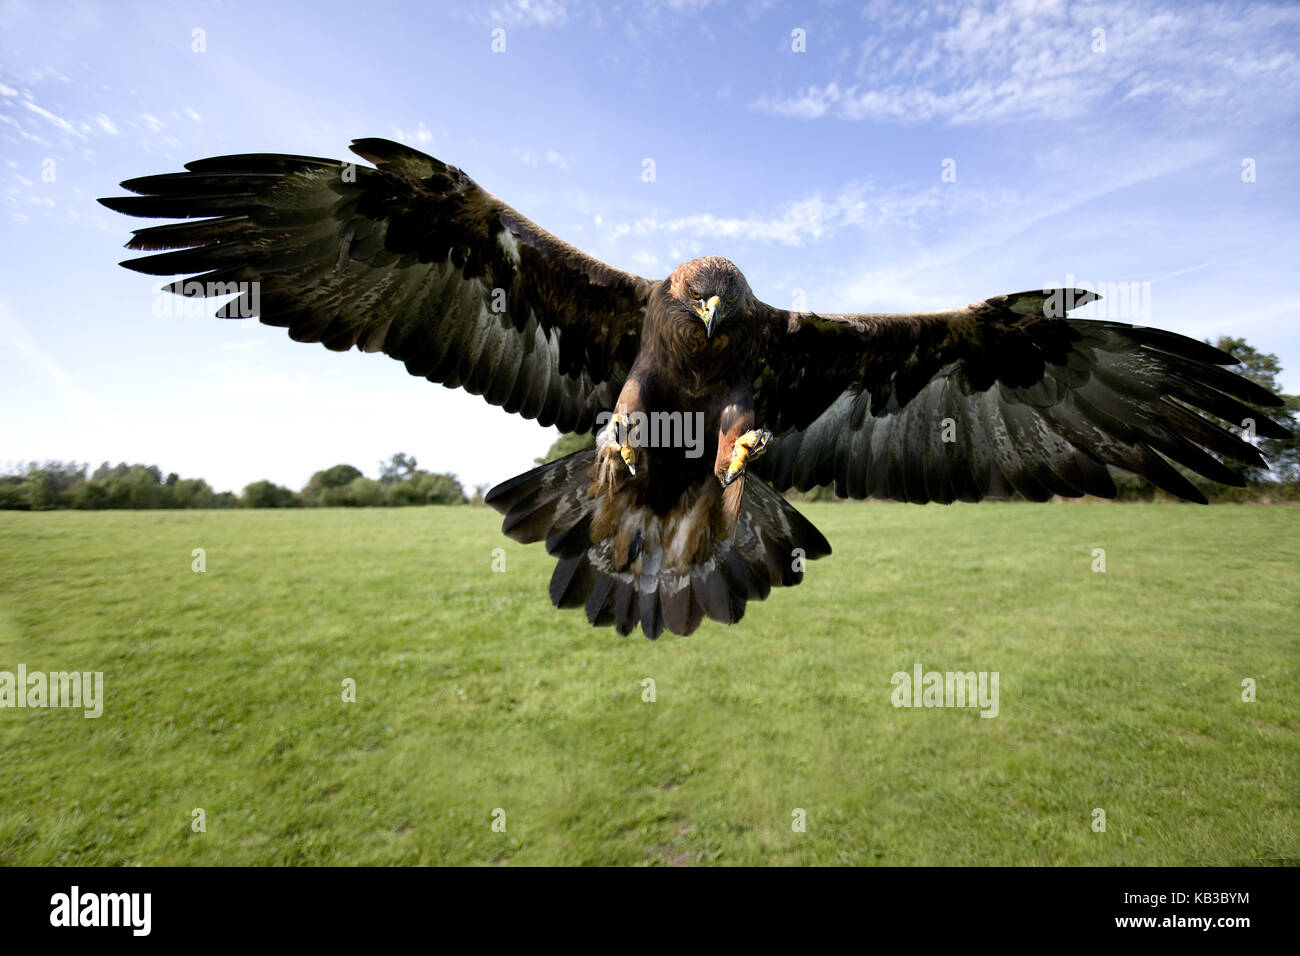 Águila de piedra, Aquila chrysaetos, animal adulto en el vuelo, Foto de stock